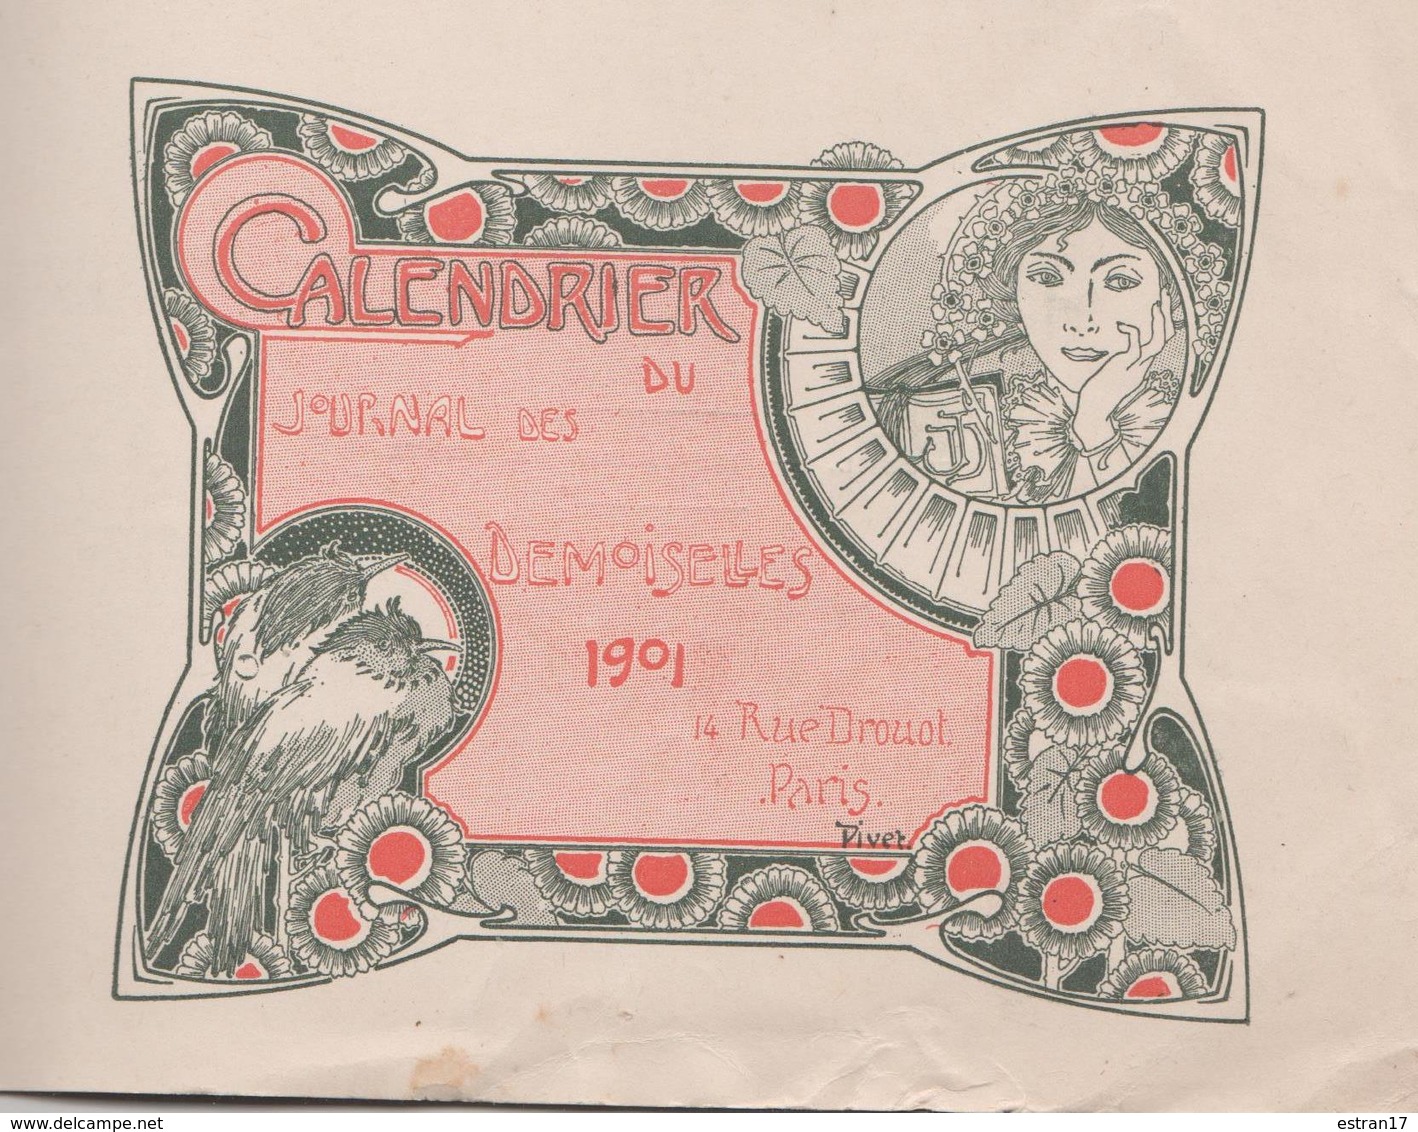 1901 CALENDRIER DU JOURNAL DES DEMOISELLES 14 RUE DROUOT PARIS - Formato Grande : 1901-20